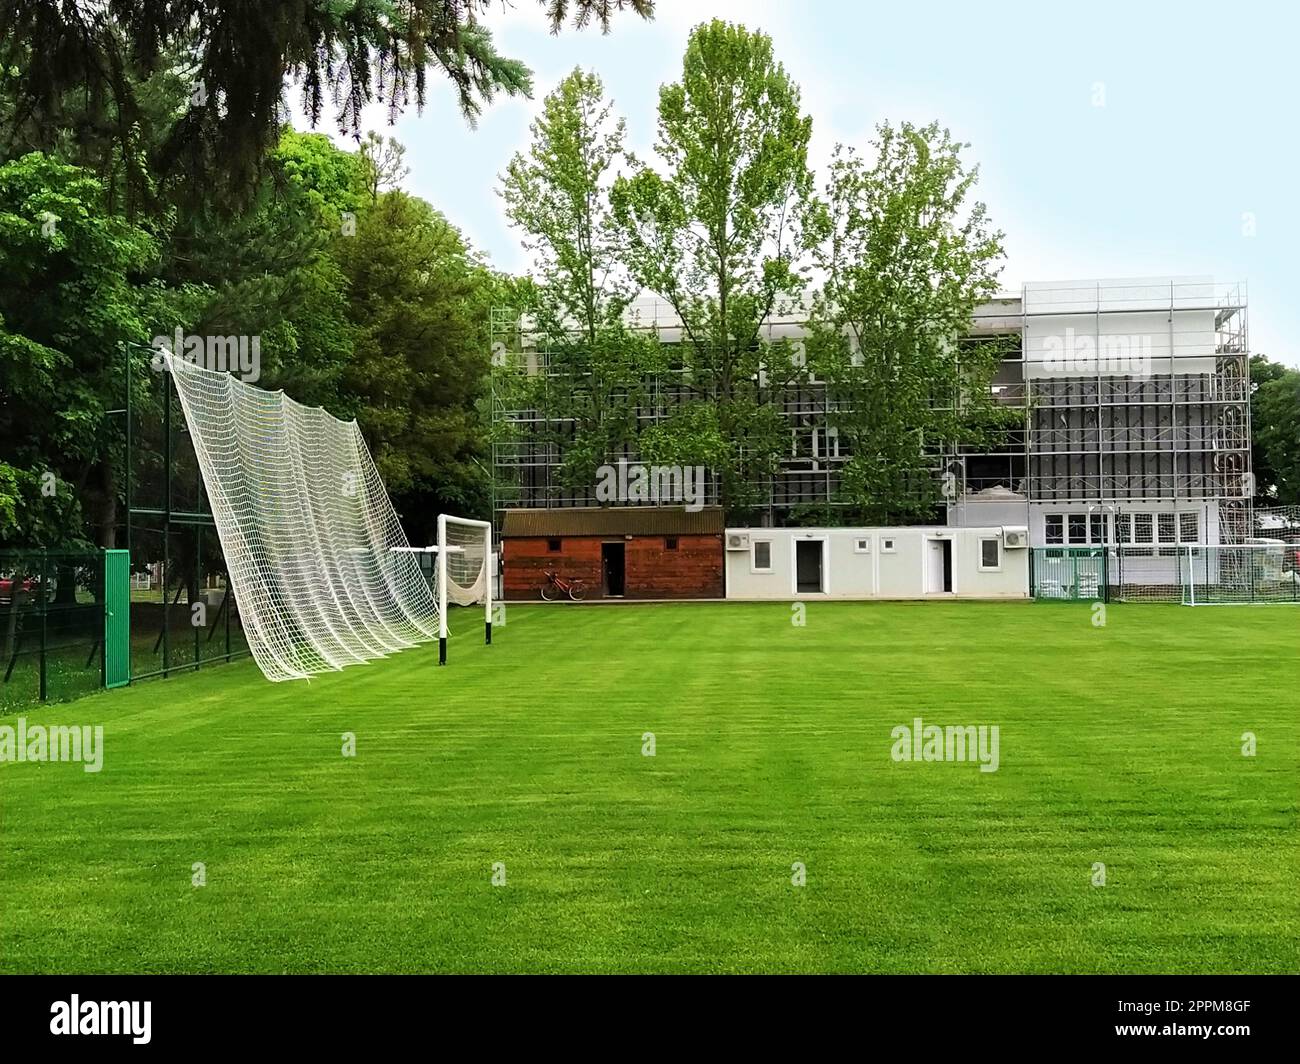 Sremska Mitrovica, Serbien. 30. Mai 2020. Ein Fußballfeld auf dem Schulgelände und ein Fußballtor. Der Bau einer neuen Schule. Schulgebäude in Gerüsten. Fassadenarbeit Stockfoto